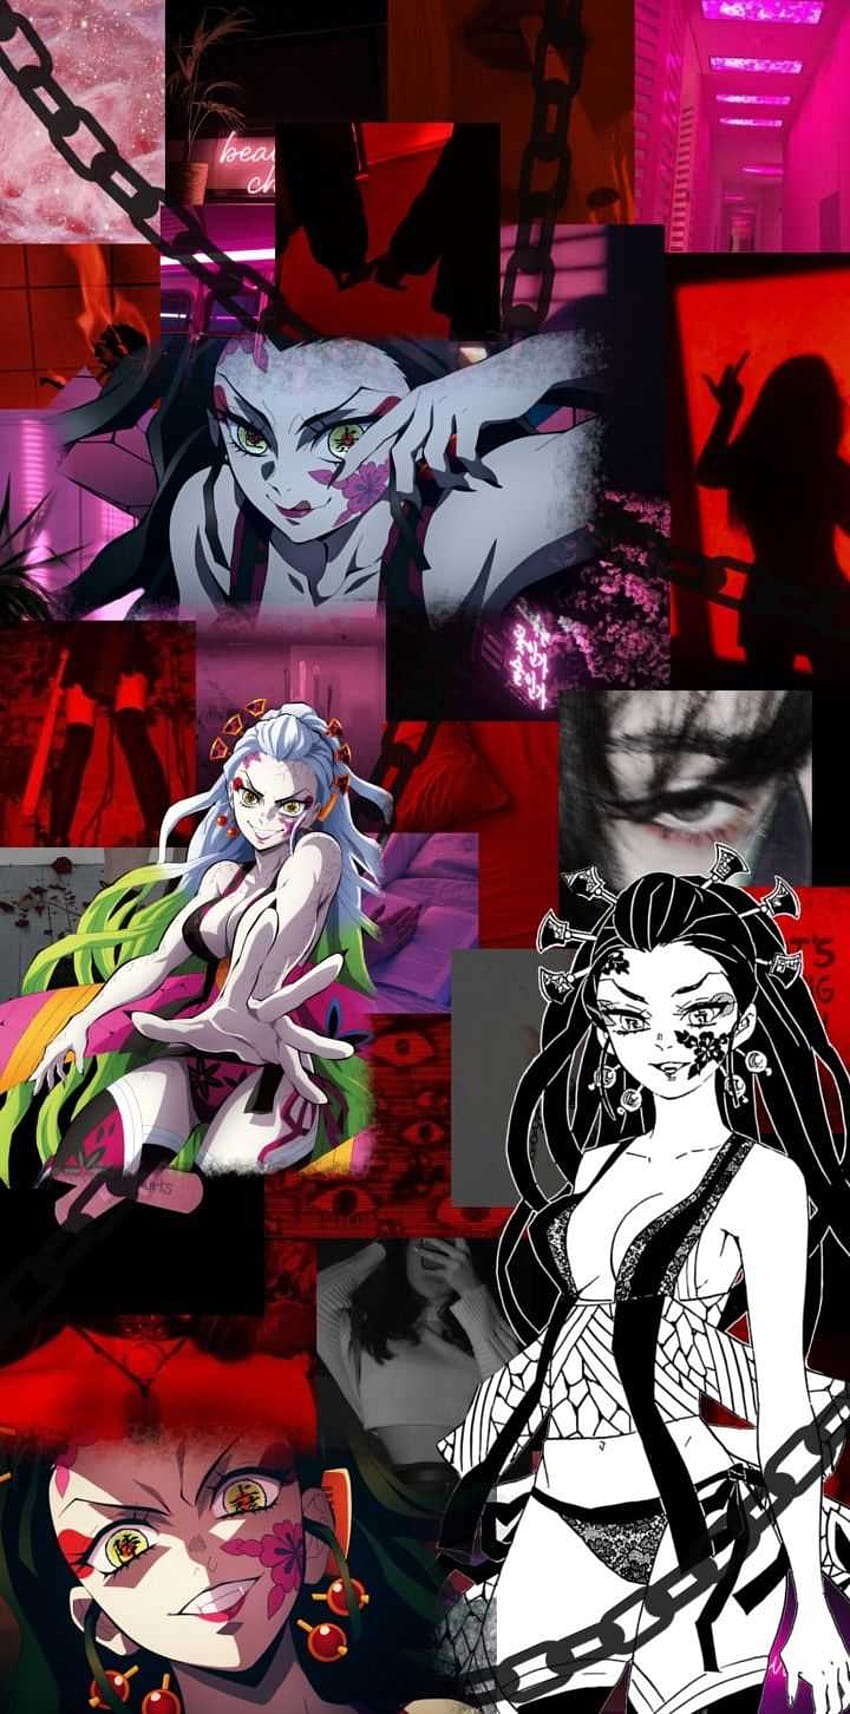 Wallpaper ID 353665  Anime Demon Slayer Kimetsu no Yaiba Phone Wallpaper  Daki Demon Slayer 1080x2400 free download